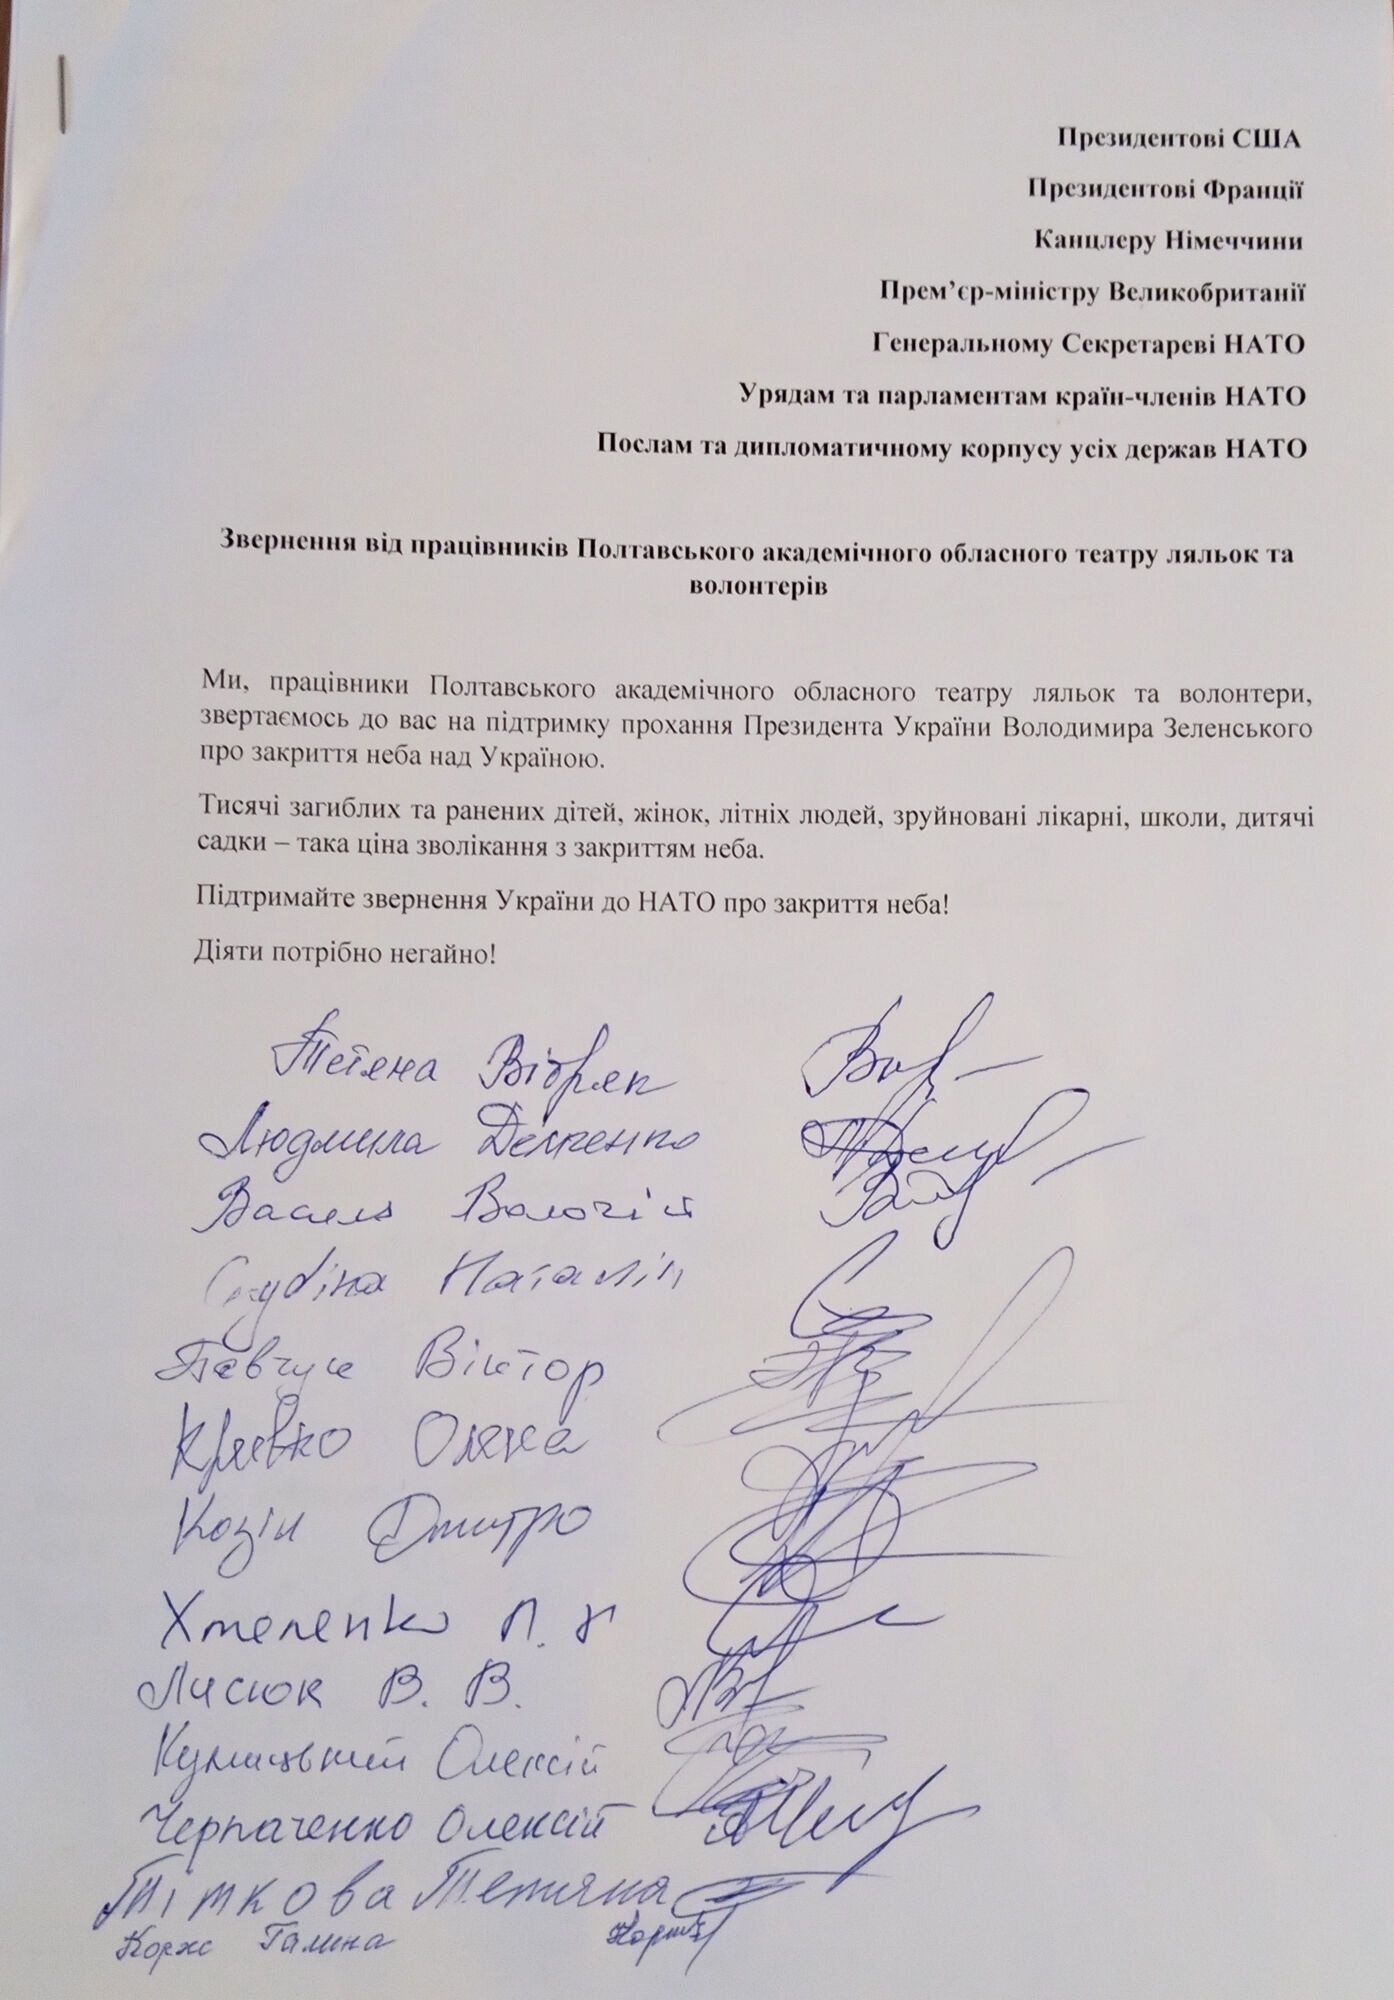 В Полтавской области более 200 тысяч жителей подписали обращение в НАТО о закрытии неба над Украиной